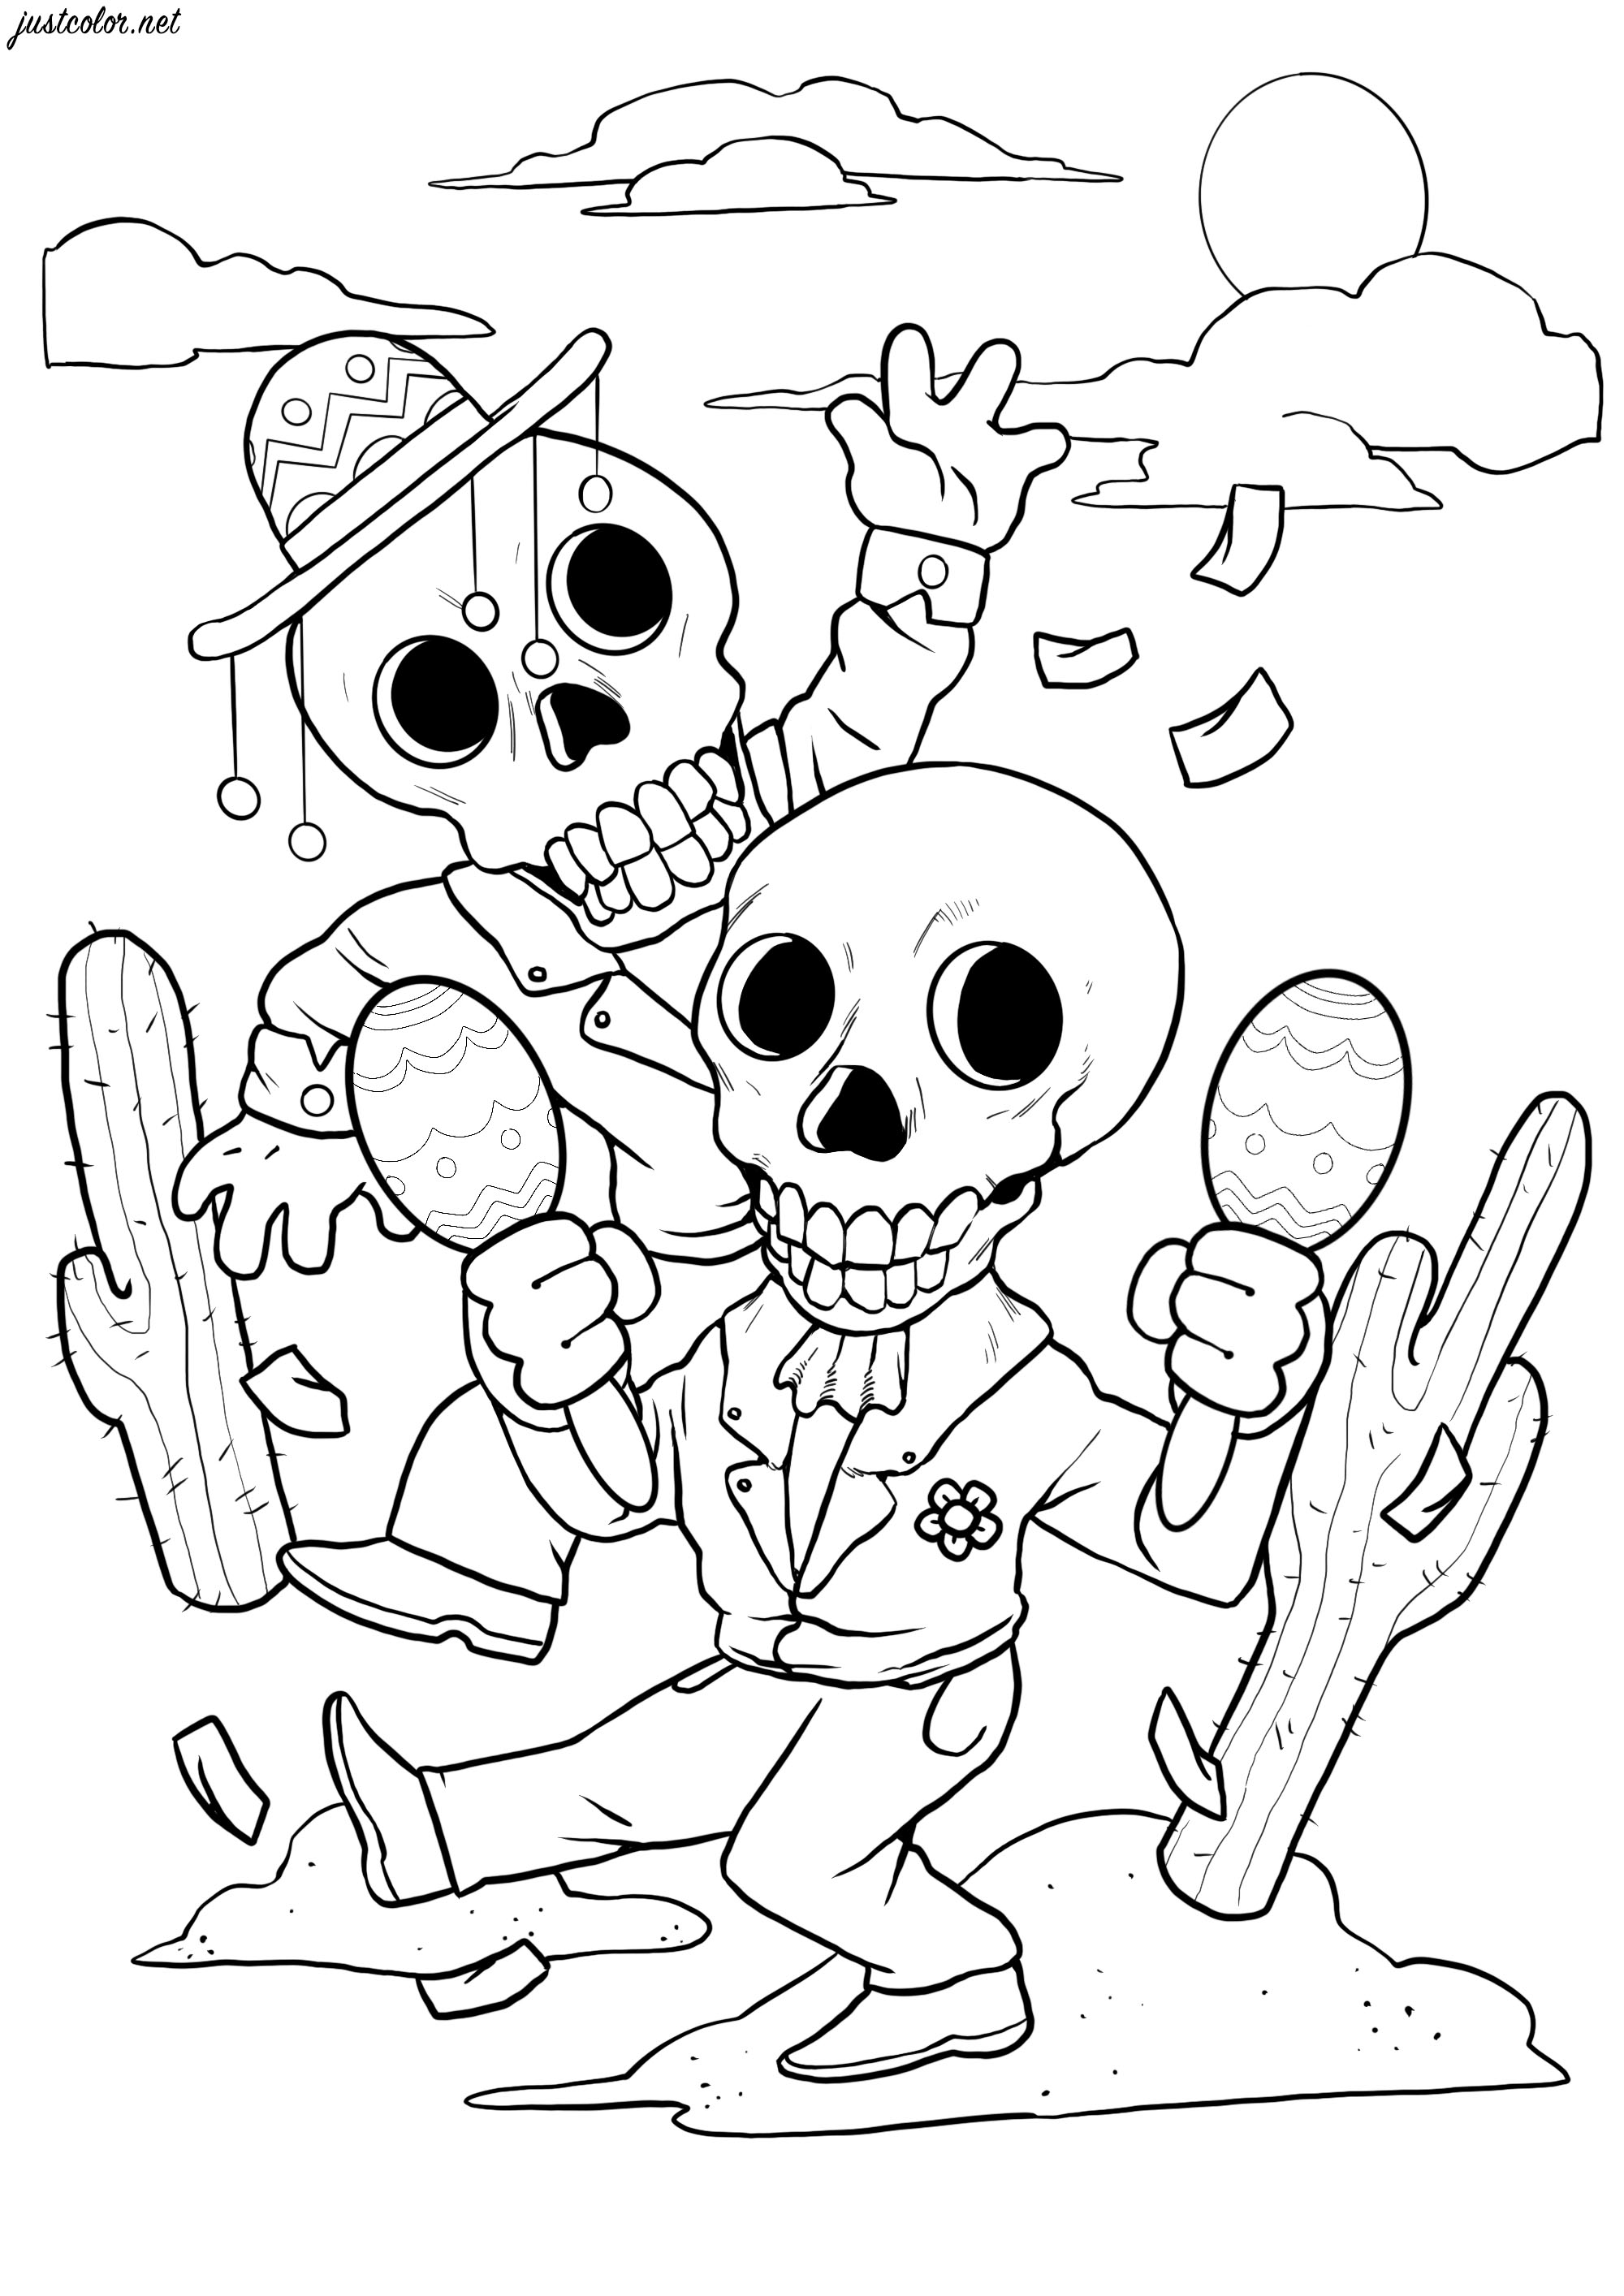 Estes dois esqueletos felizes dançam para o El Día de los Muertos. Coloração muito simples com poucos pormenores